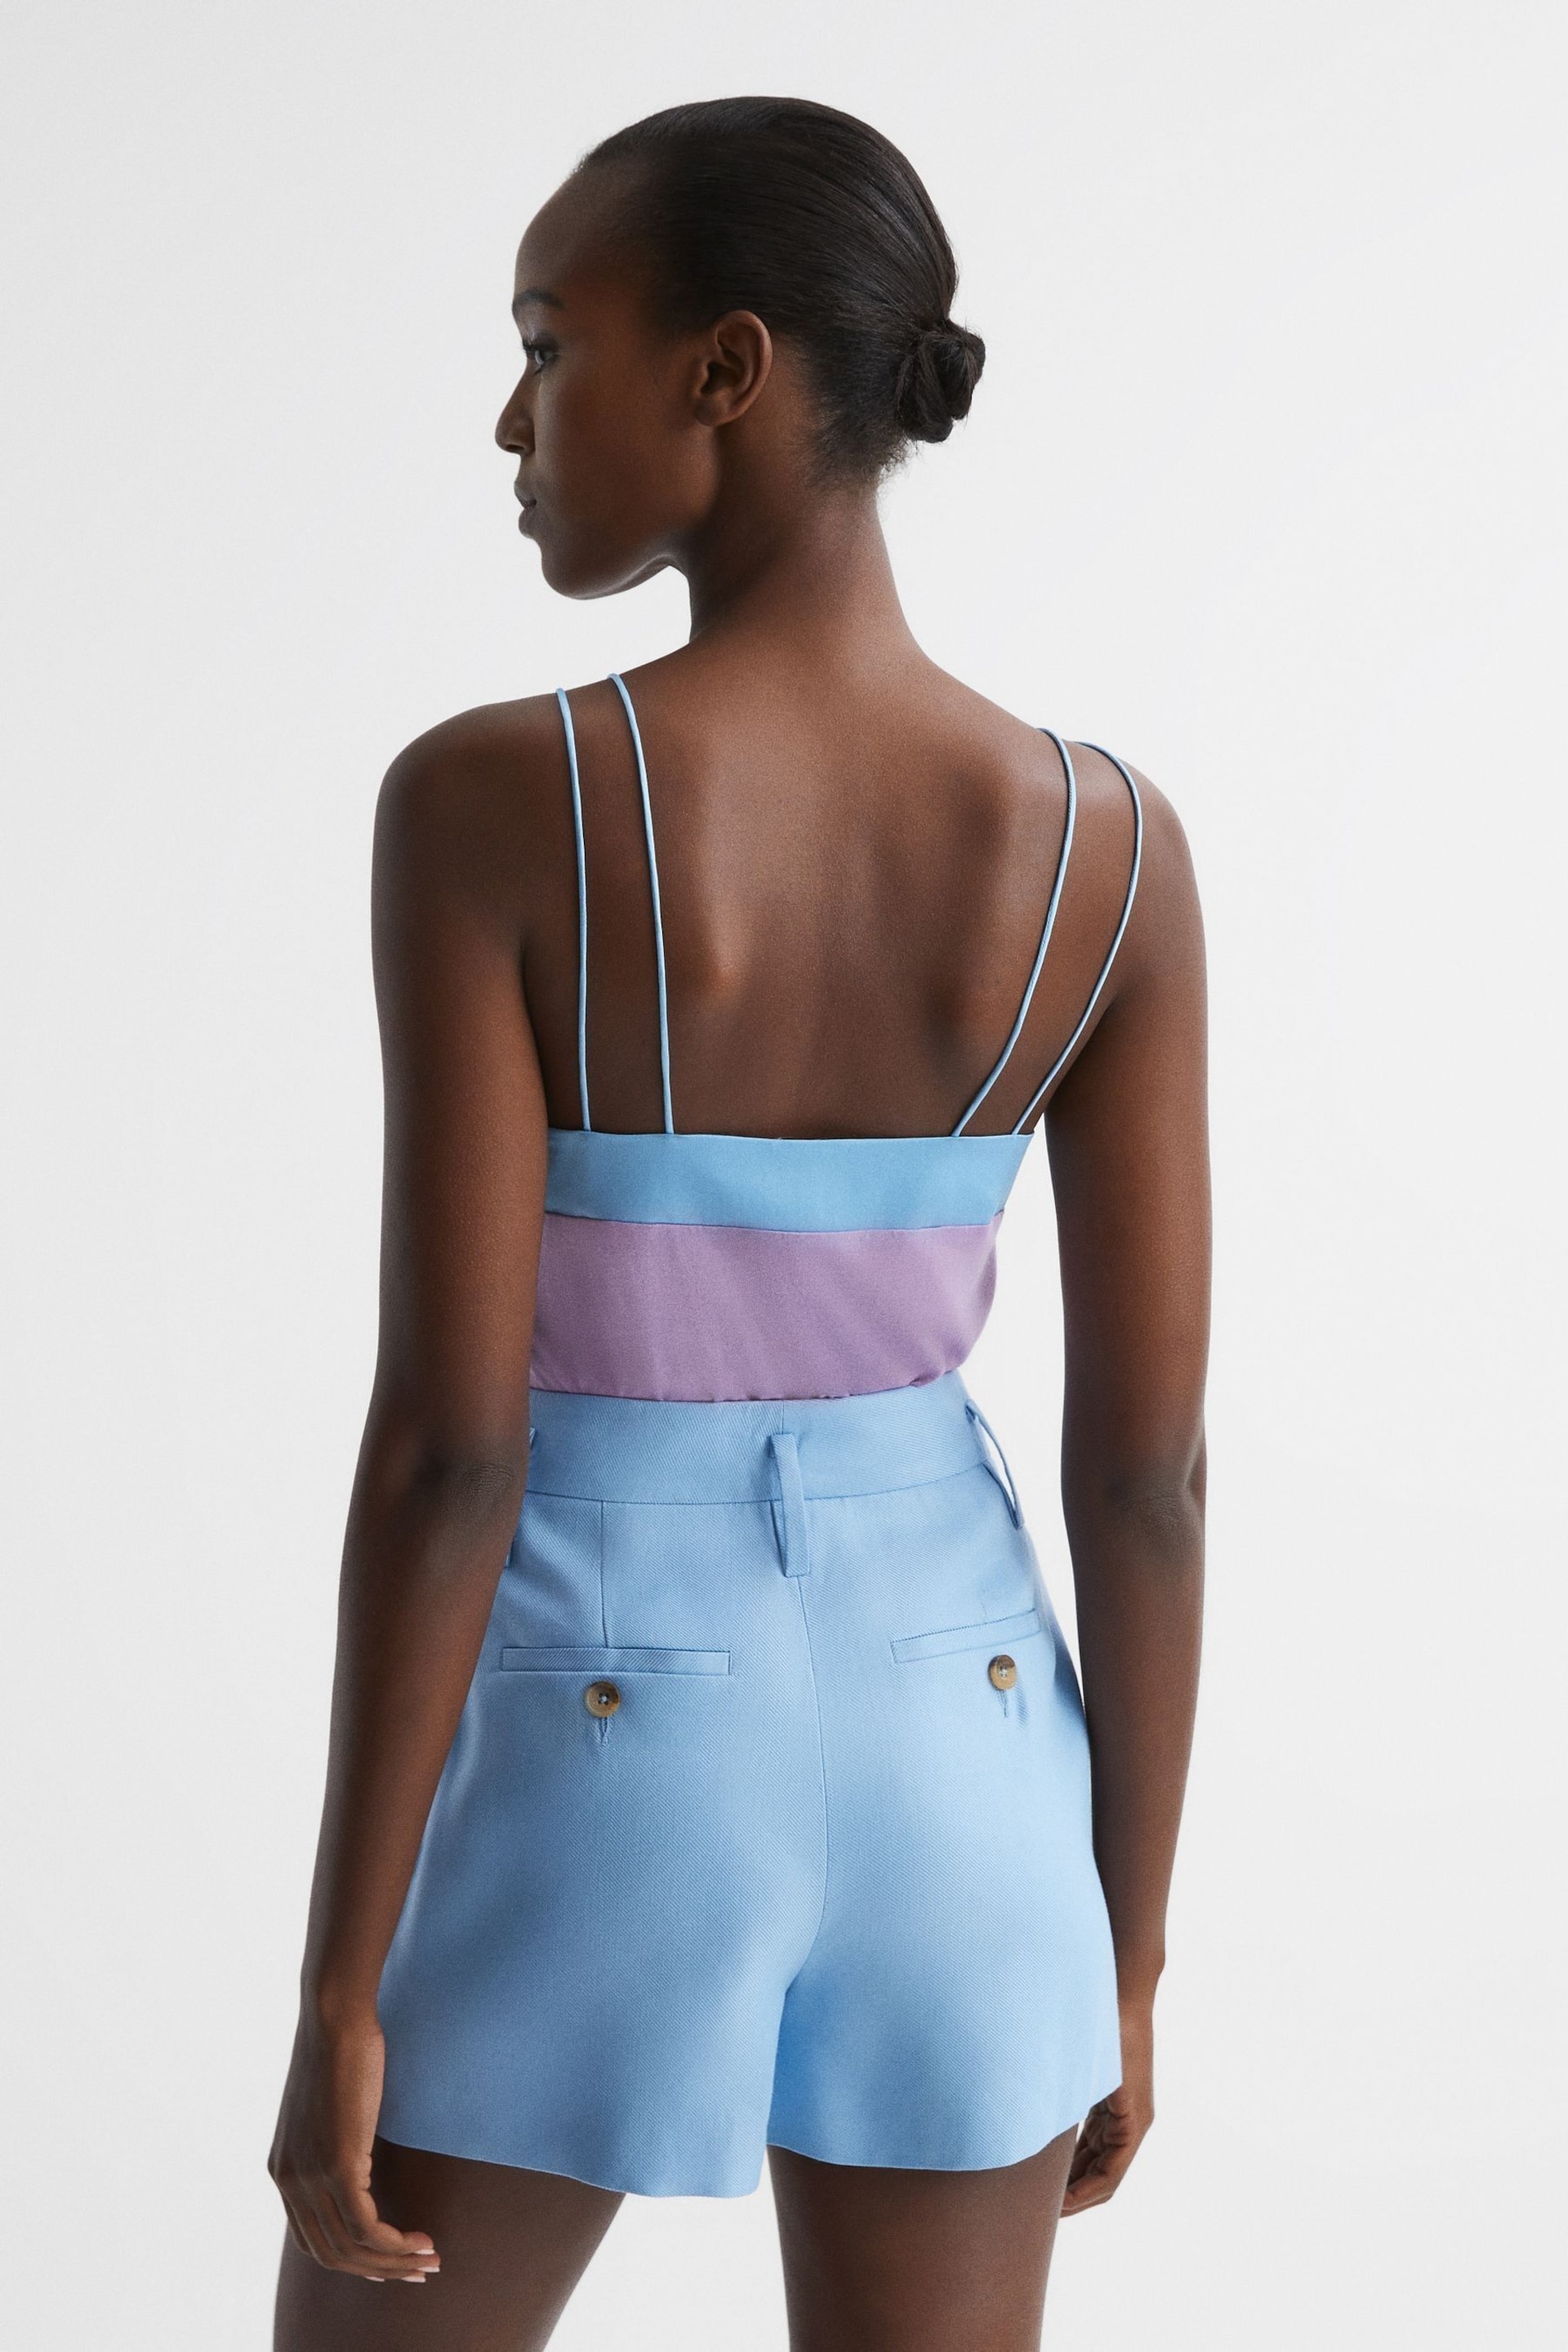 Reiss Lilac/Blue Payton Silk Blend Colourblock Vest - Image 5 of 6